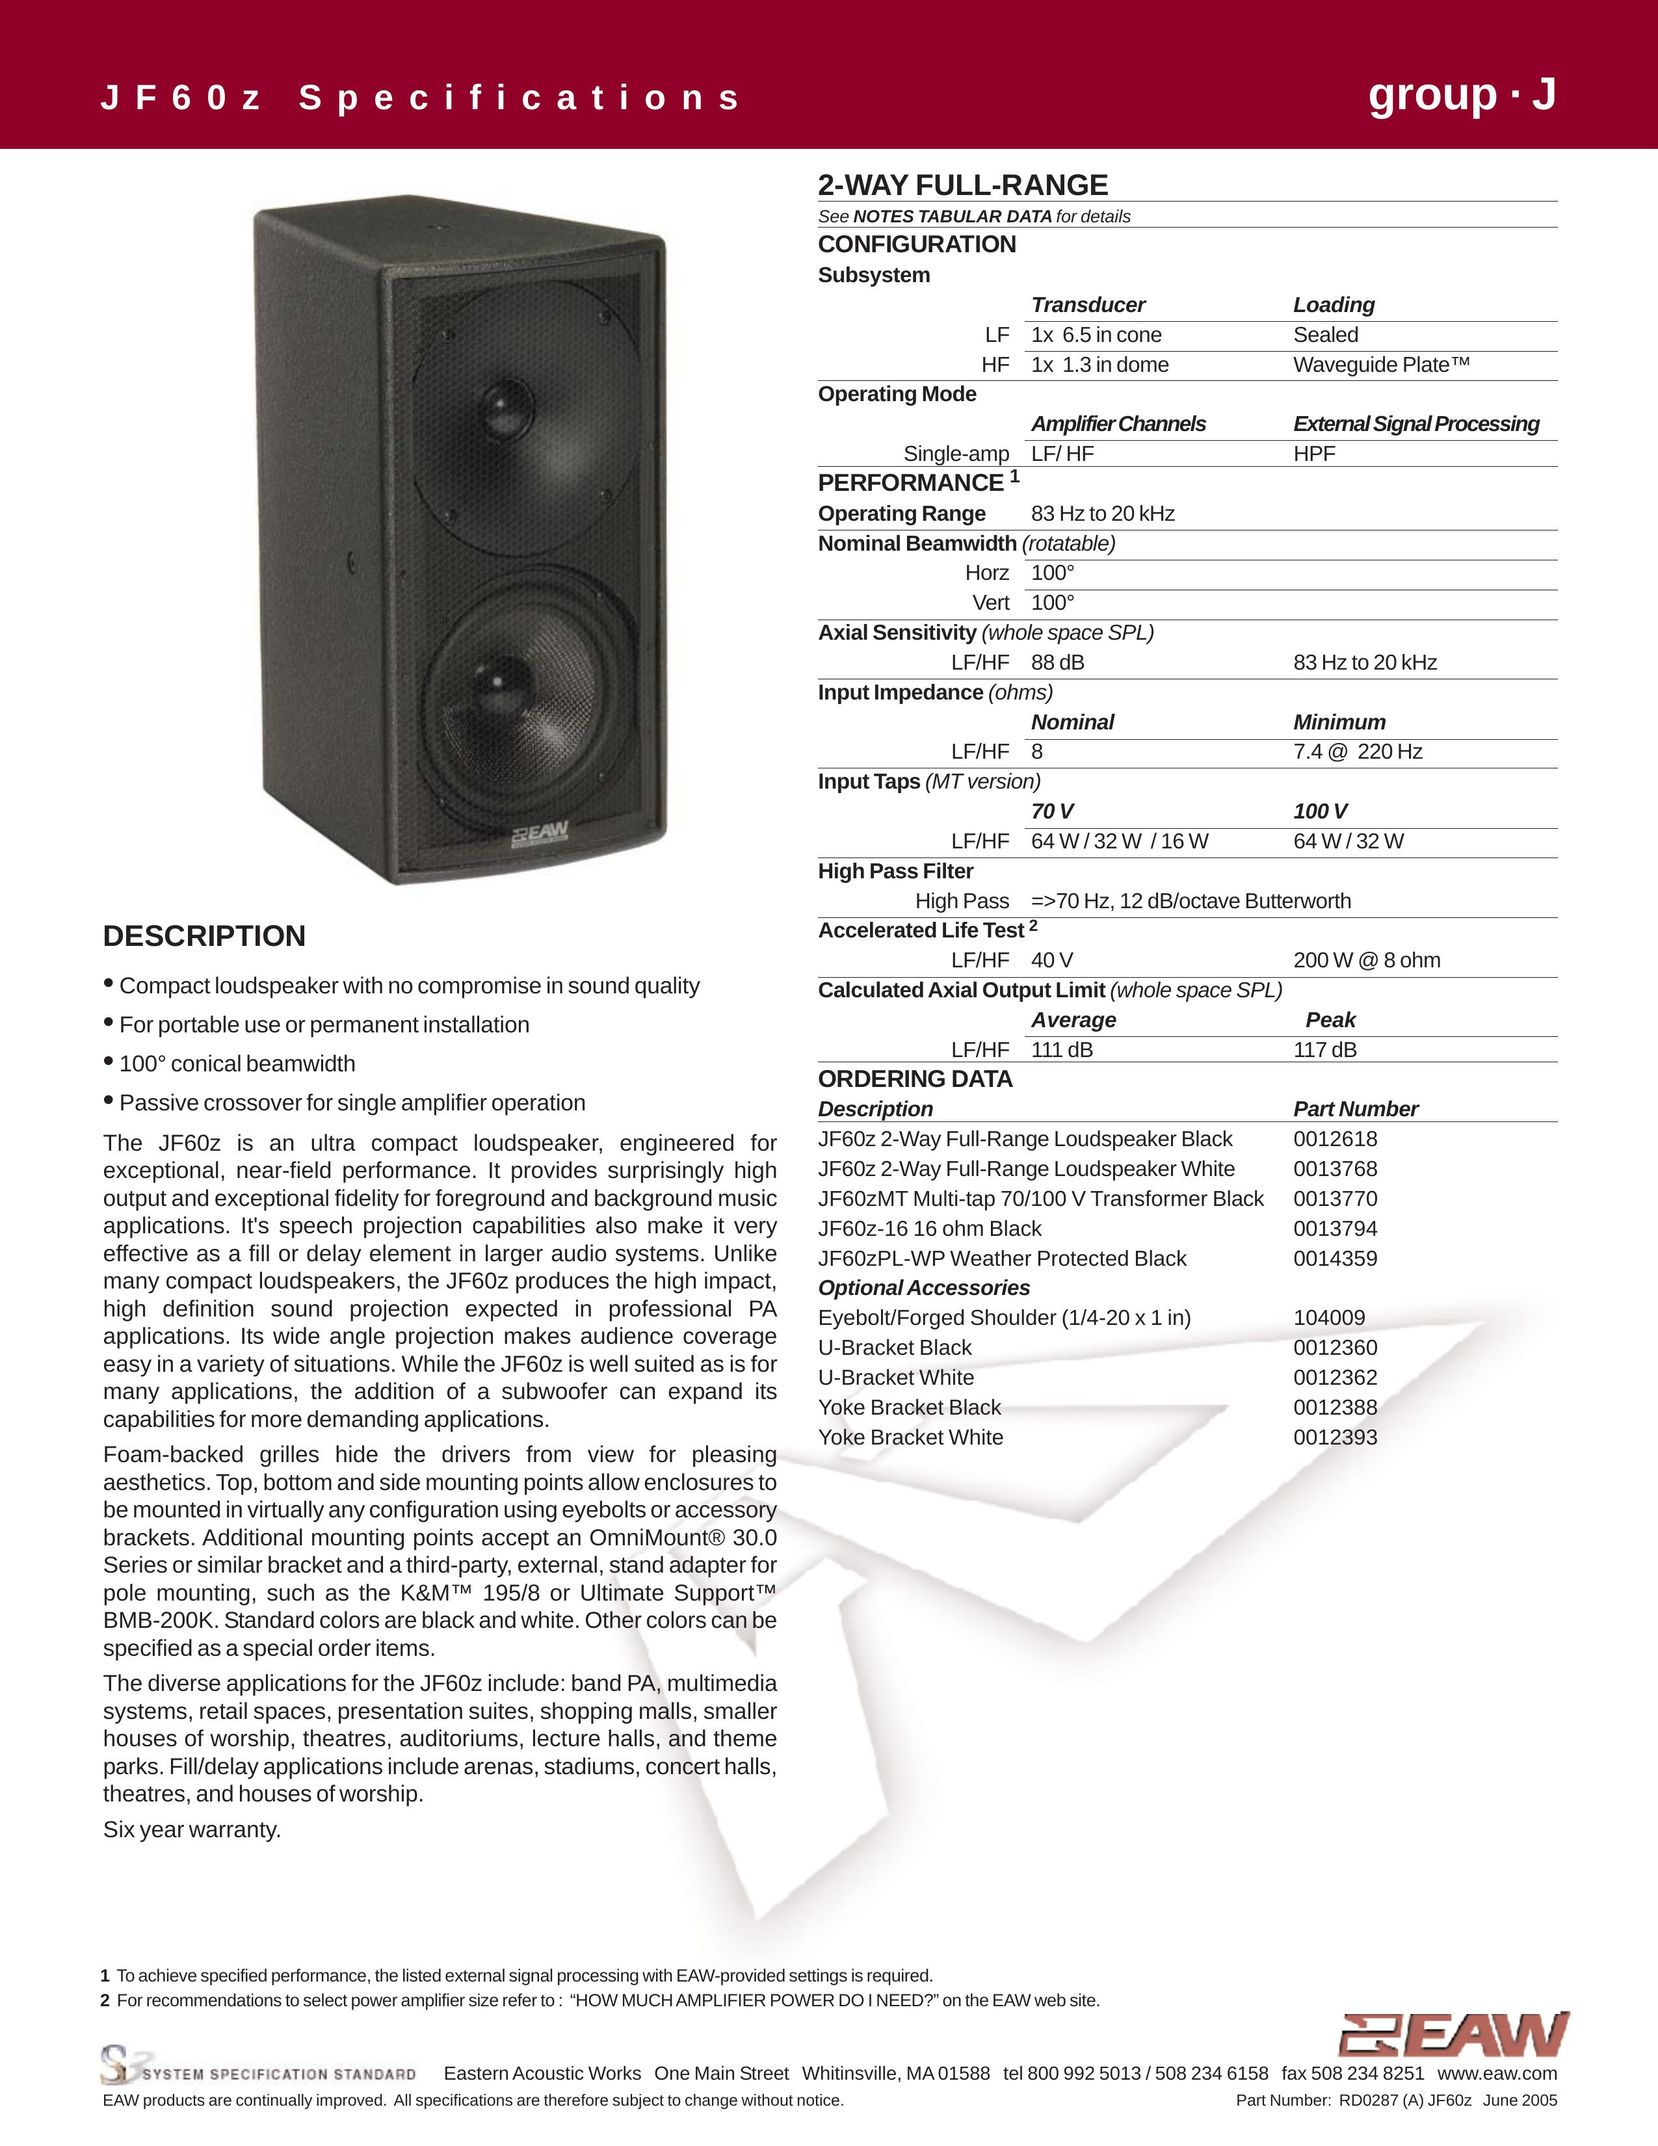 EAW JF60z Speaker User Manual